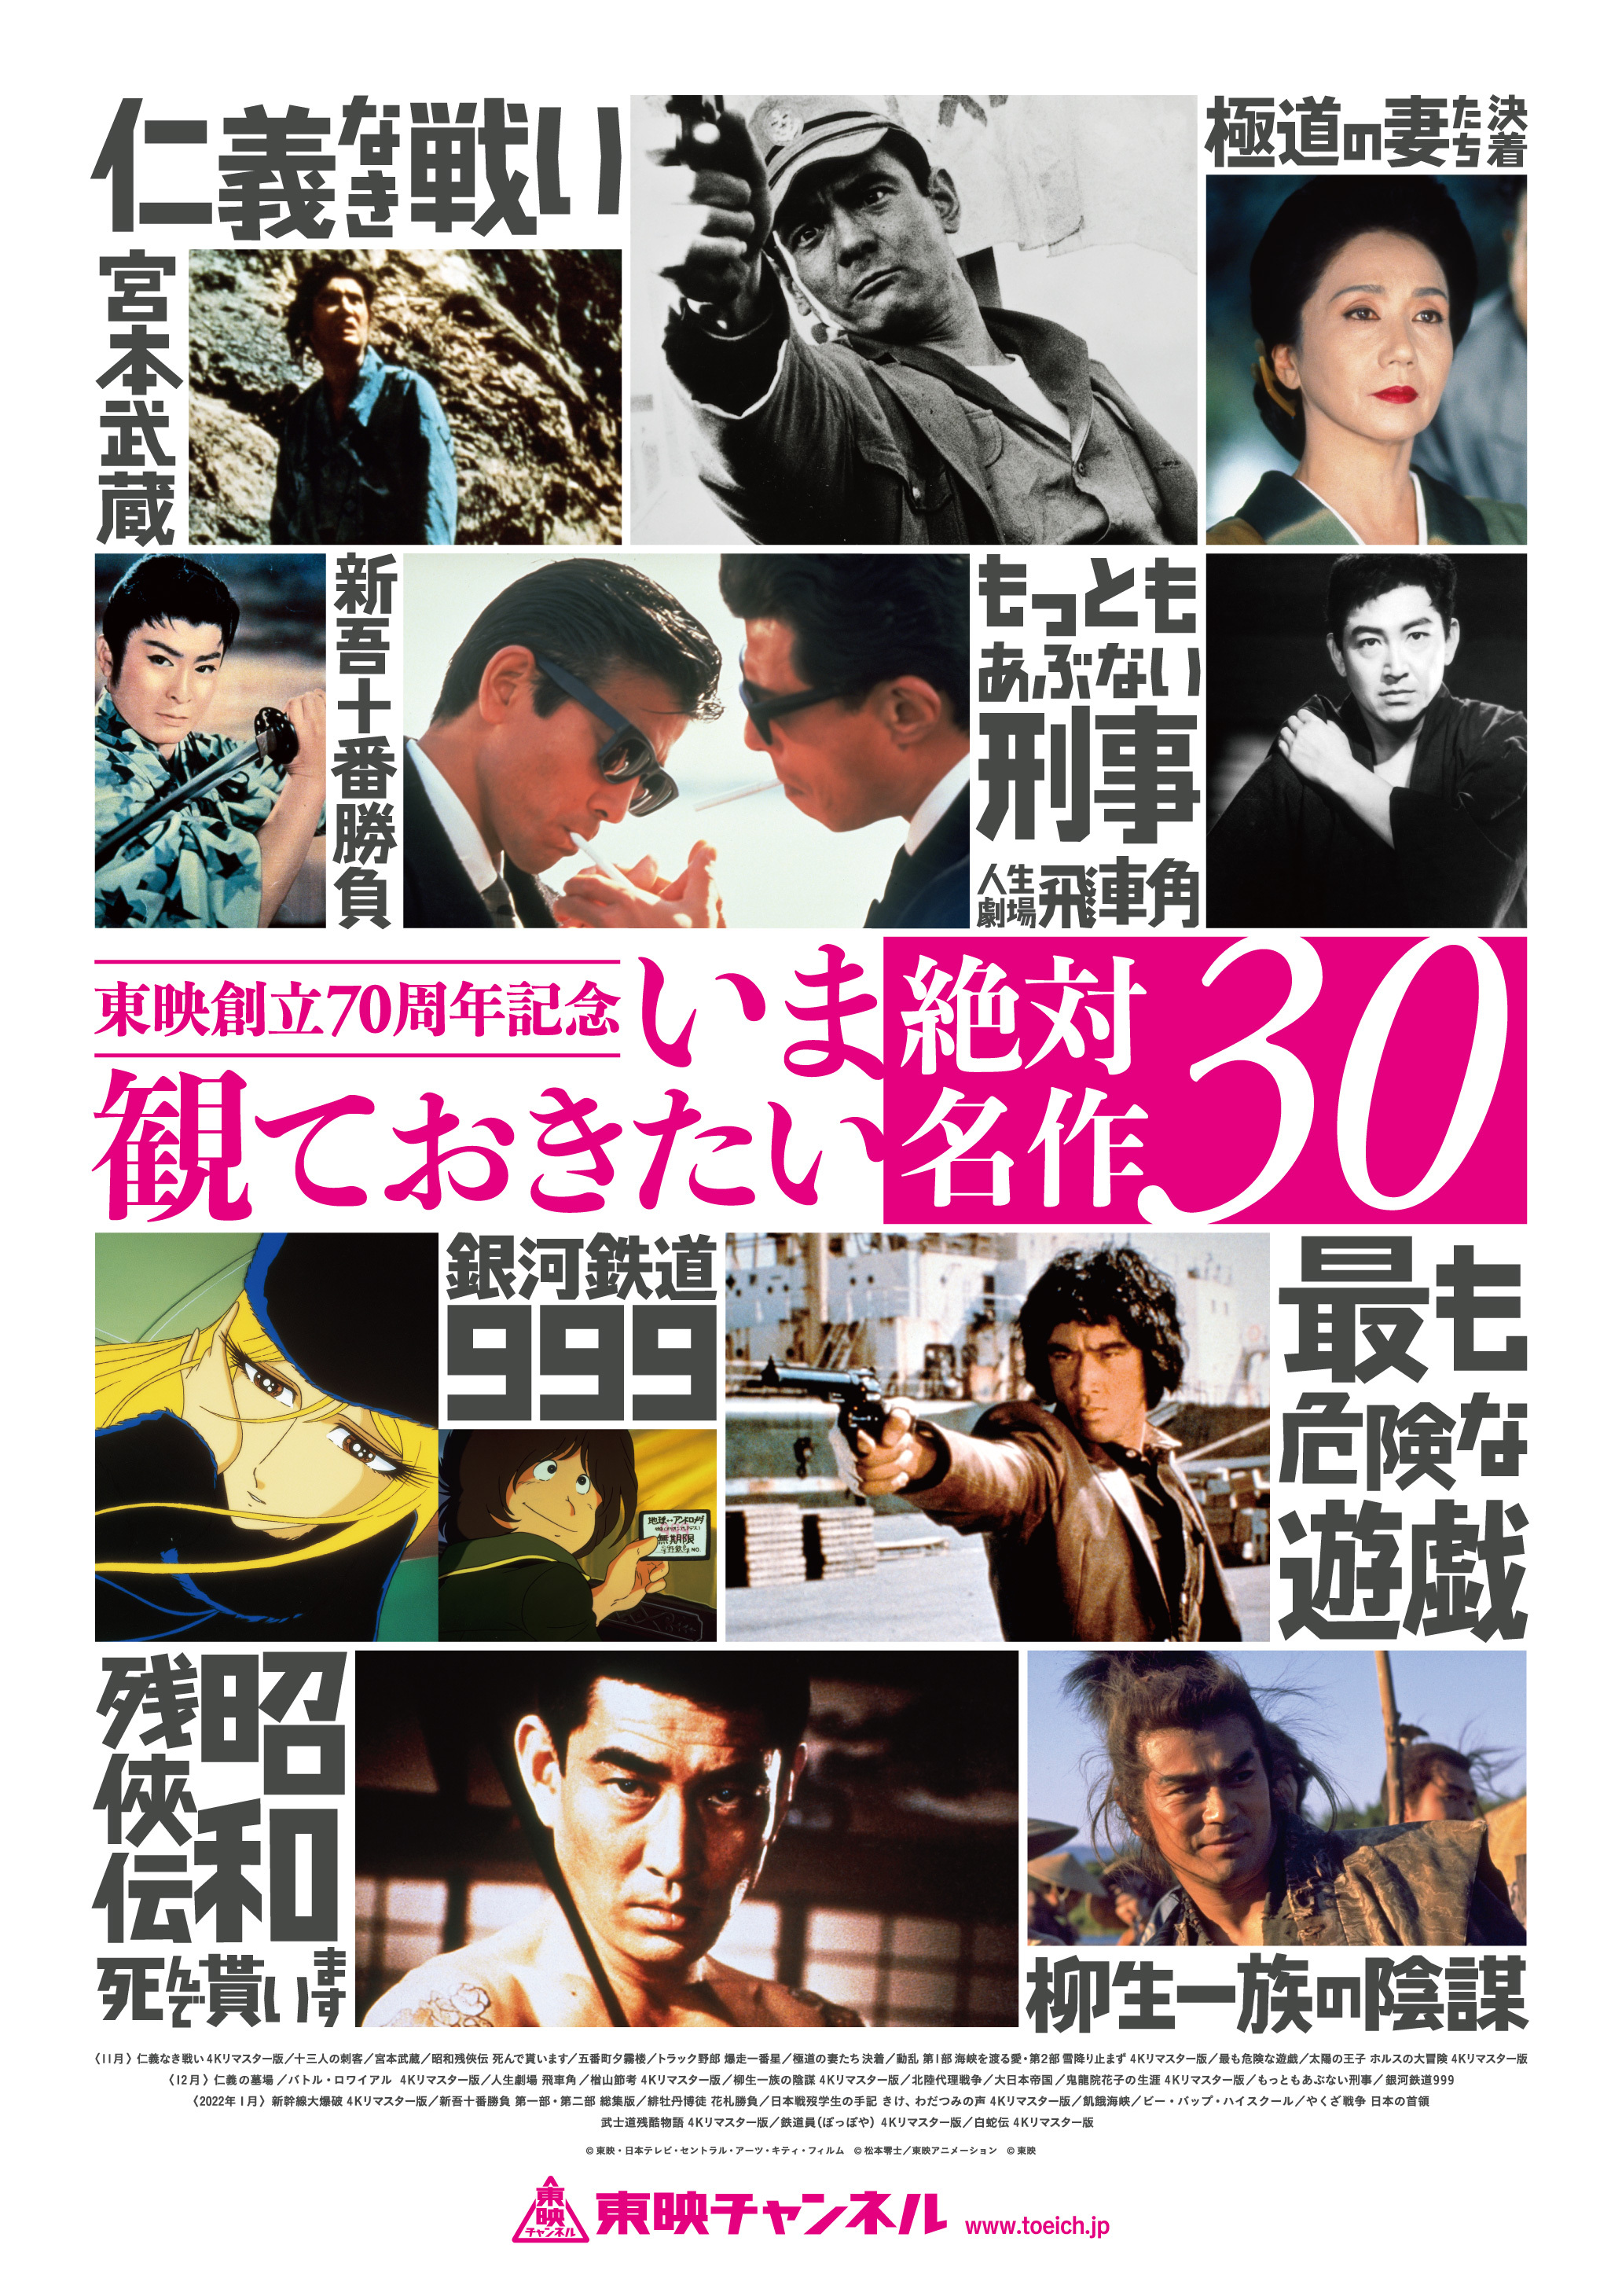 創立70周年記念、東映名作30本の特集放送決定 『仁義なき戦い』など12